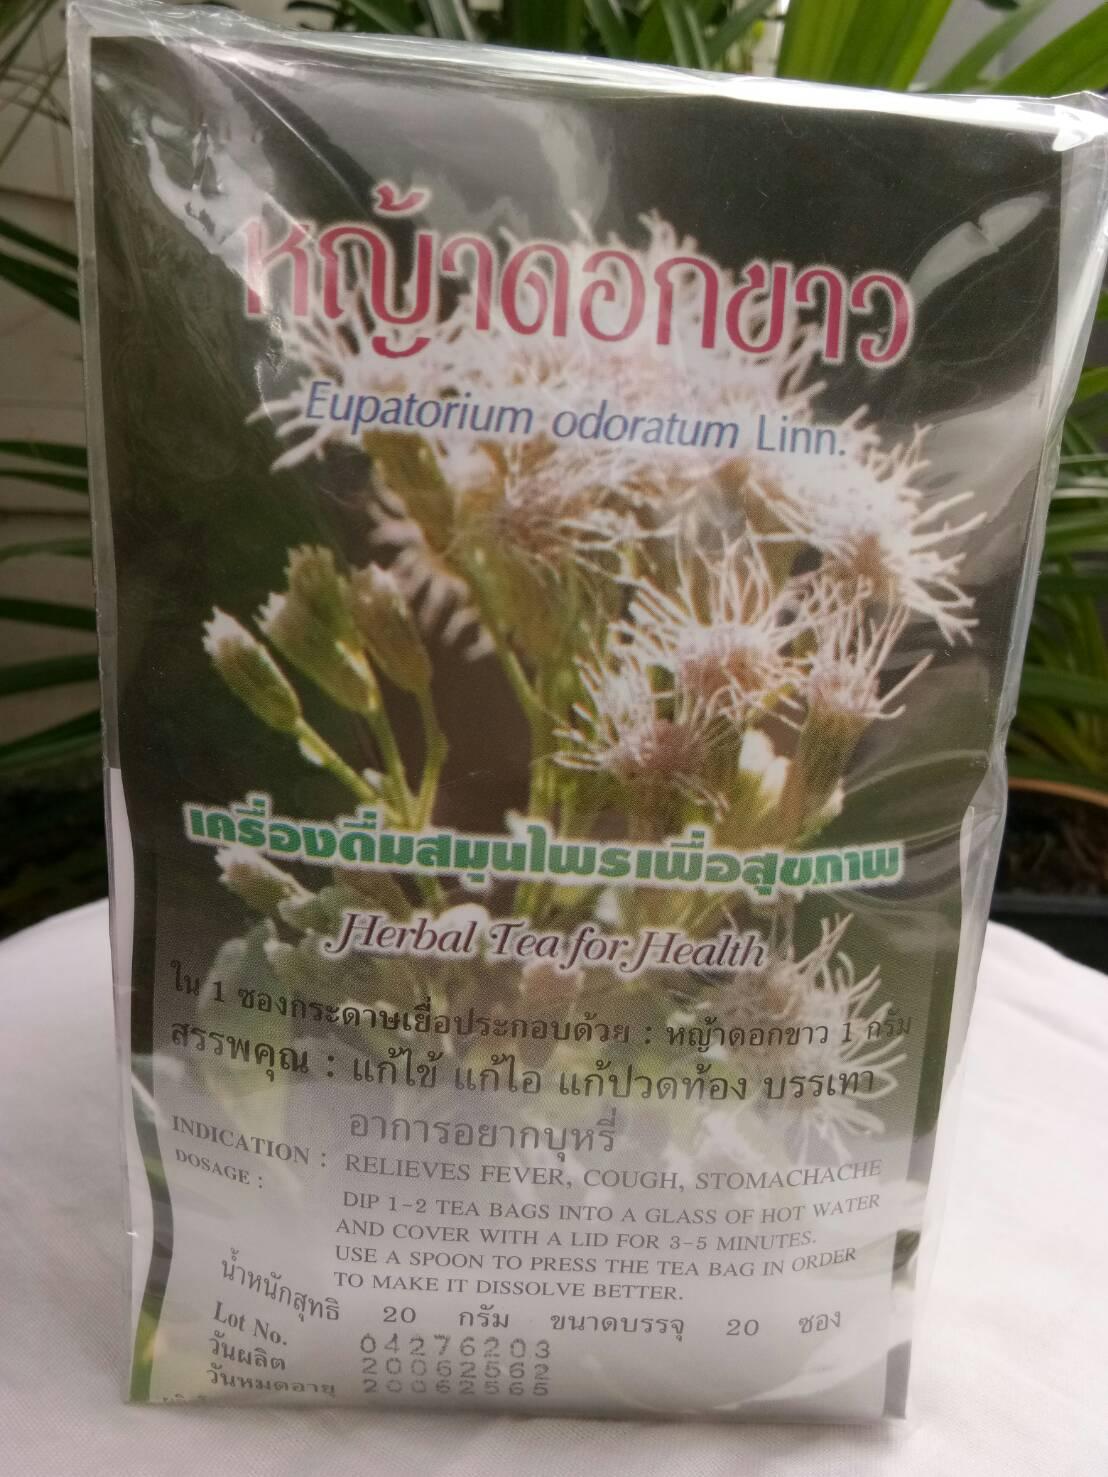 หญ้าดอกขาวชาชง ชุมชนปฐมอโศก บรรจุ 20 ซอง (Eupatorium odoratum Linn Herbal Tea for Health)